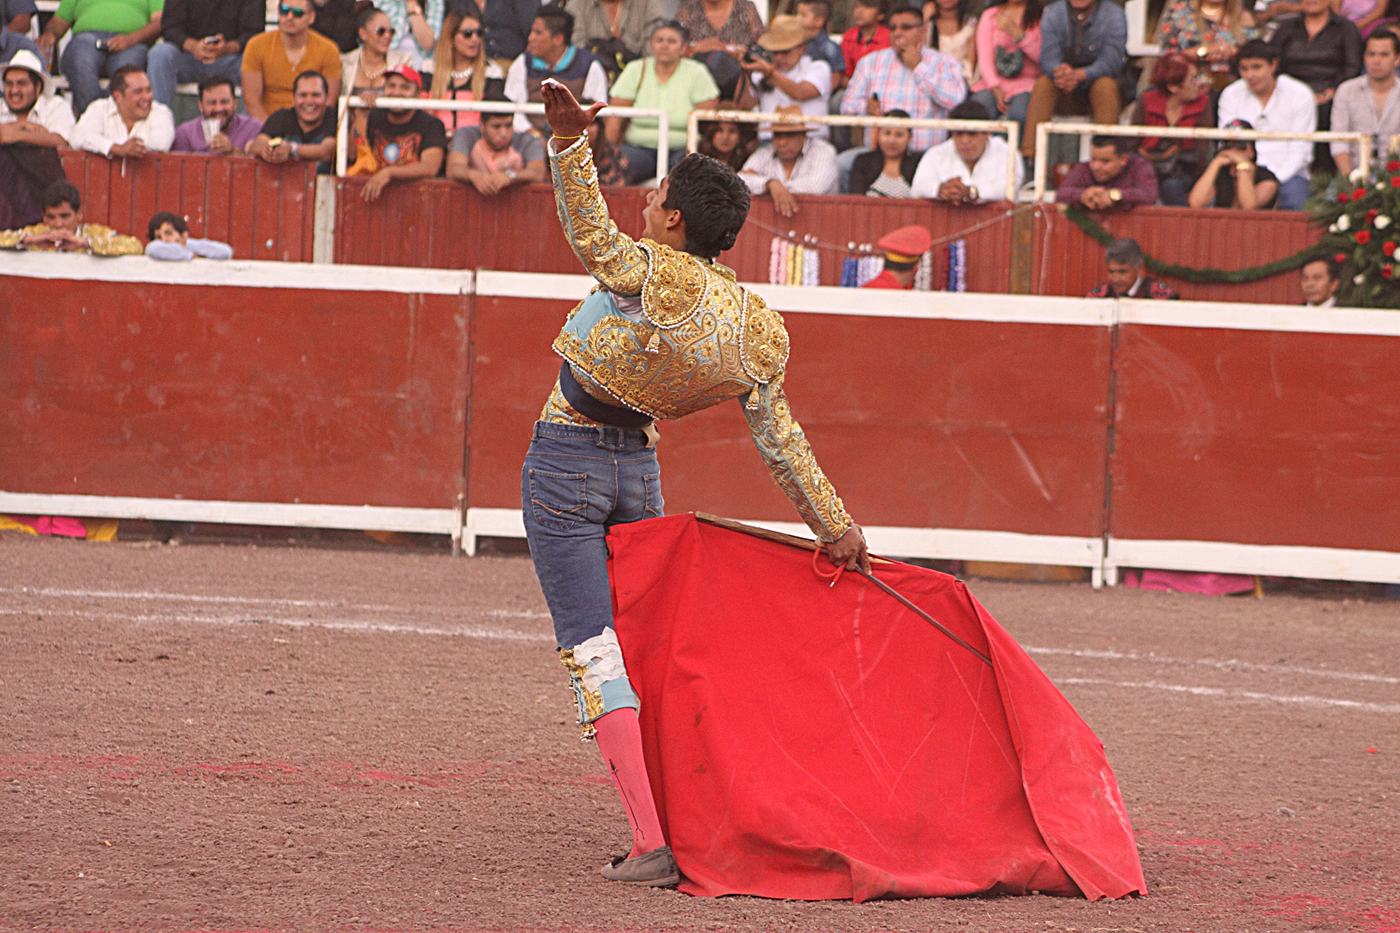 tauromaquia Rancho San Jose Arturo Jimenez Mangas toros Lidia Ecatepec fiesta taurina bullfight bulls matador Matador de toros taurinos sangre y arena Luces pase